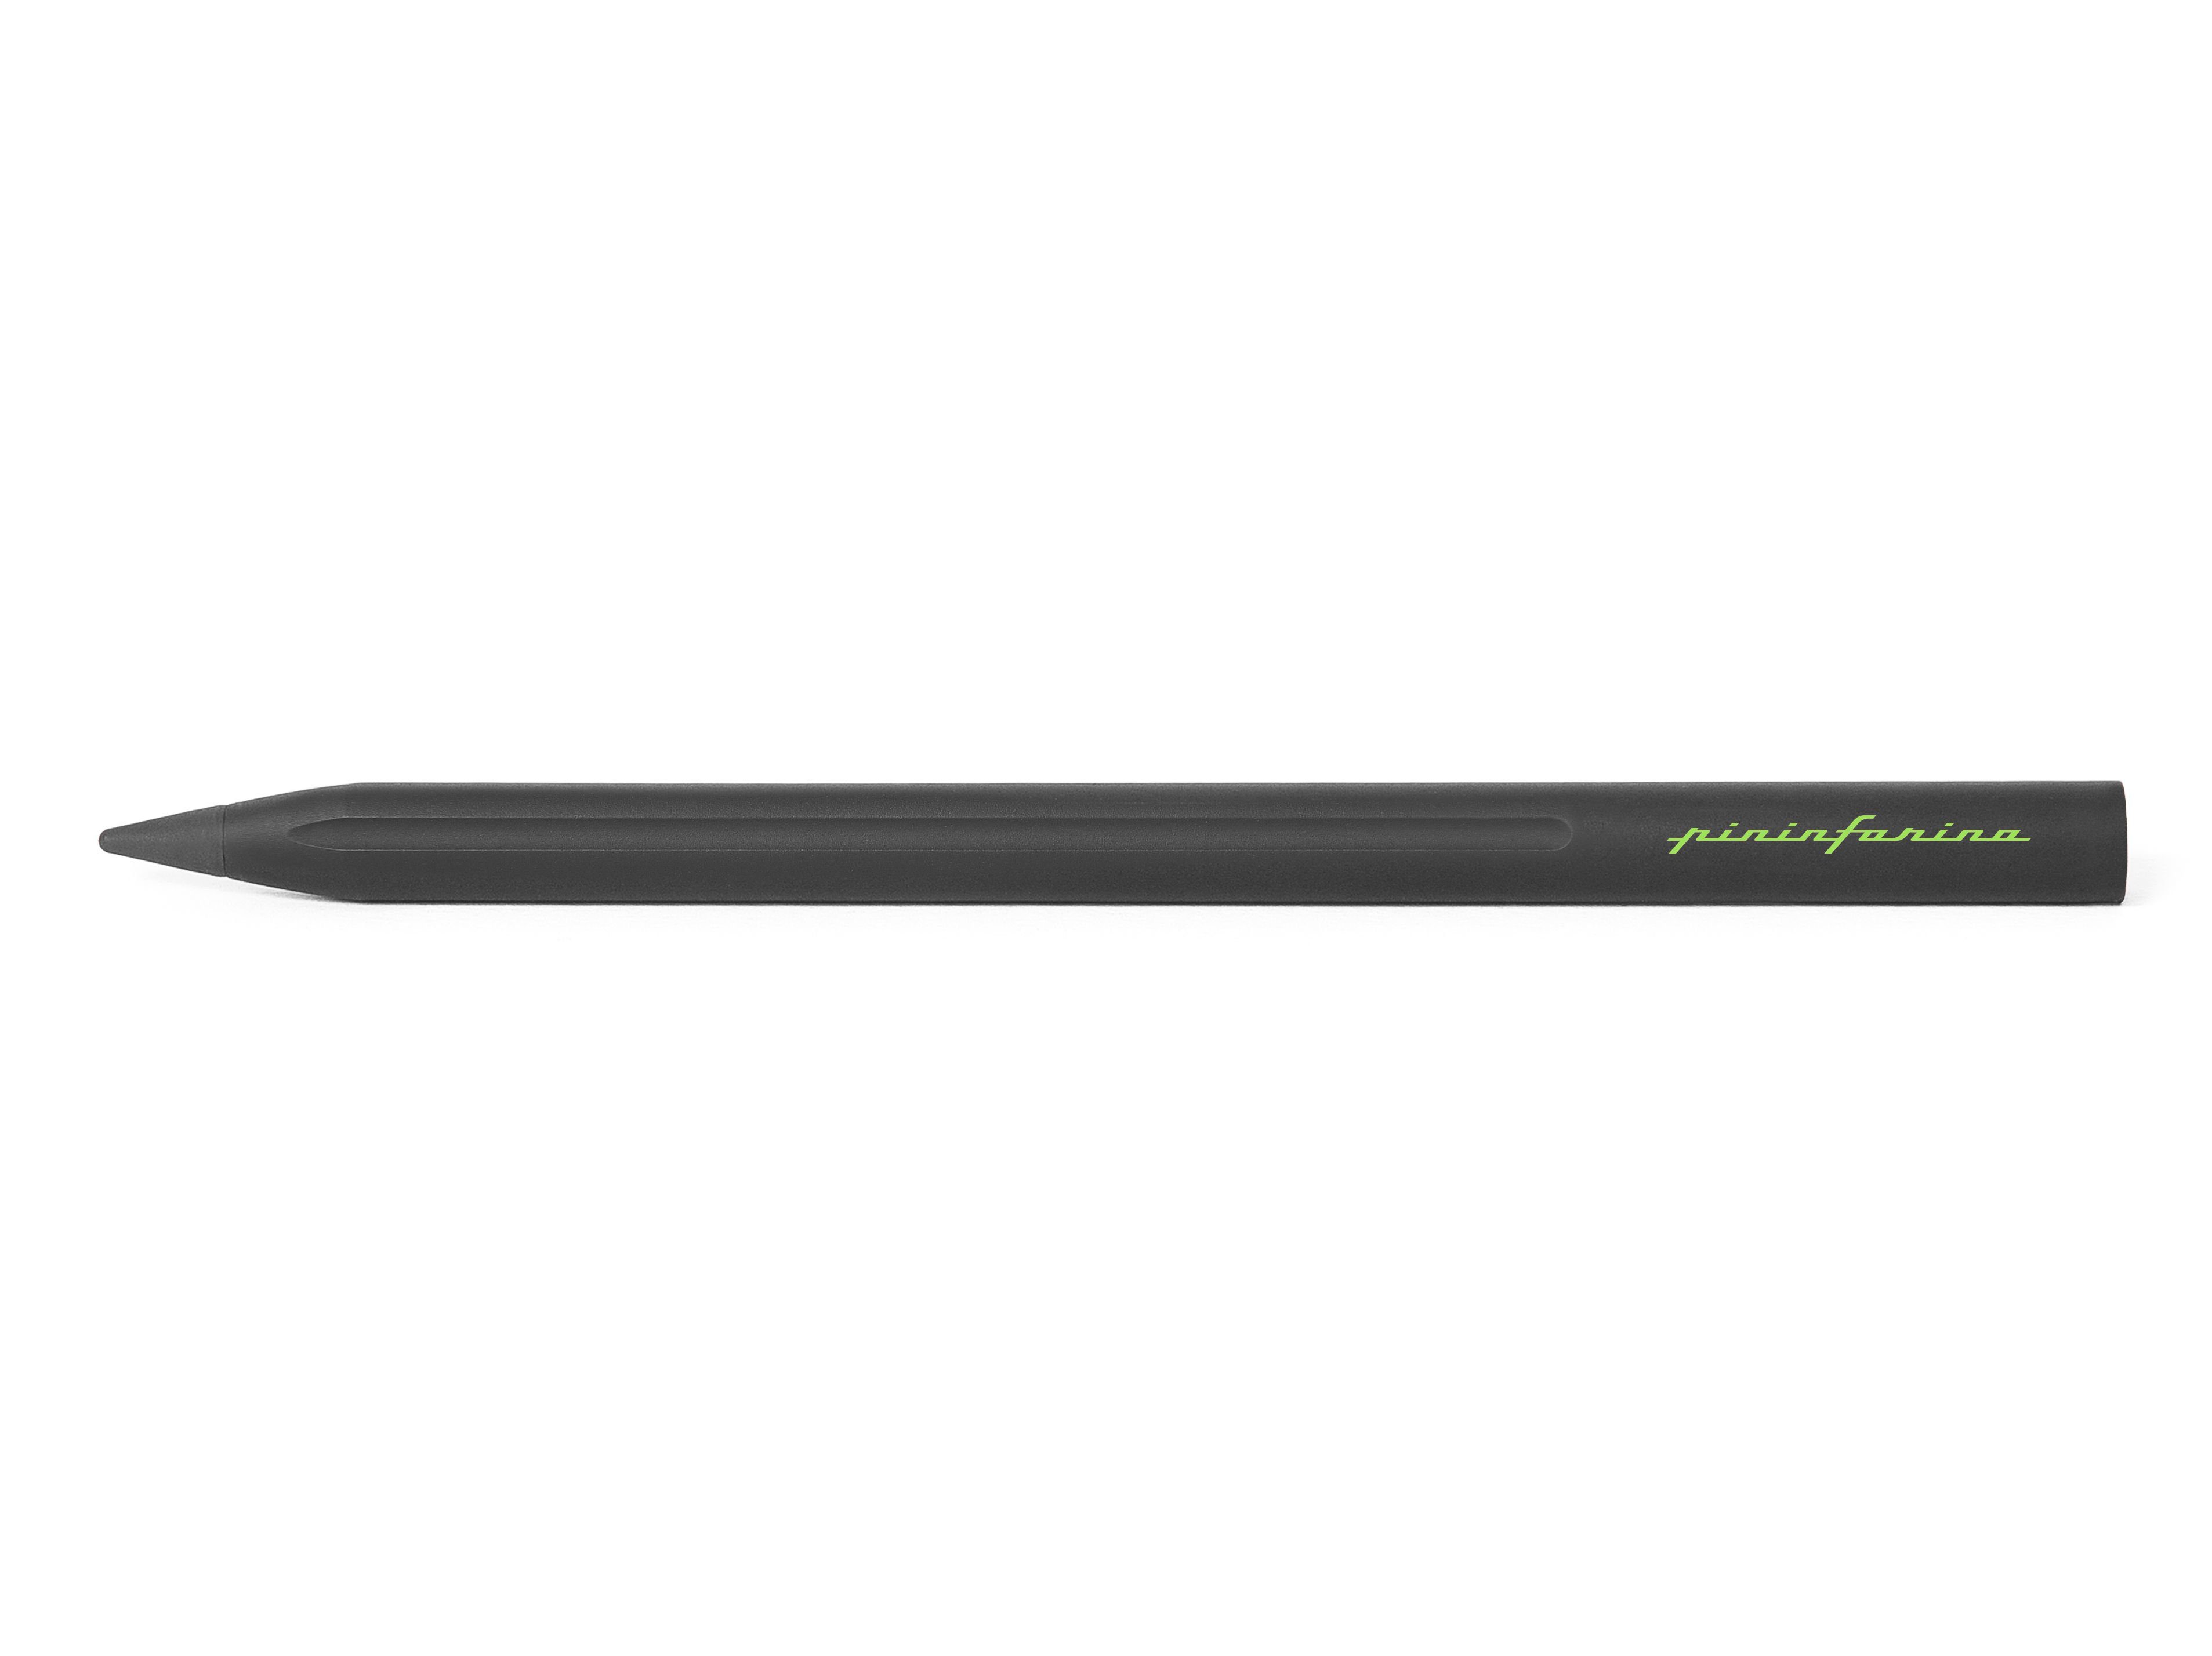 Pininfarina Bleistift Bleistift Grafeex Schreibgerät Pininfarina Grün 4 Pencil Set) (kein Farbe, Bleier Smart